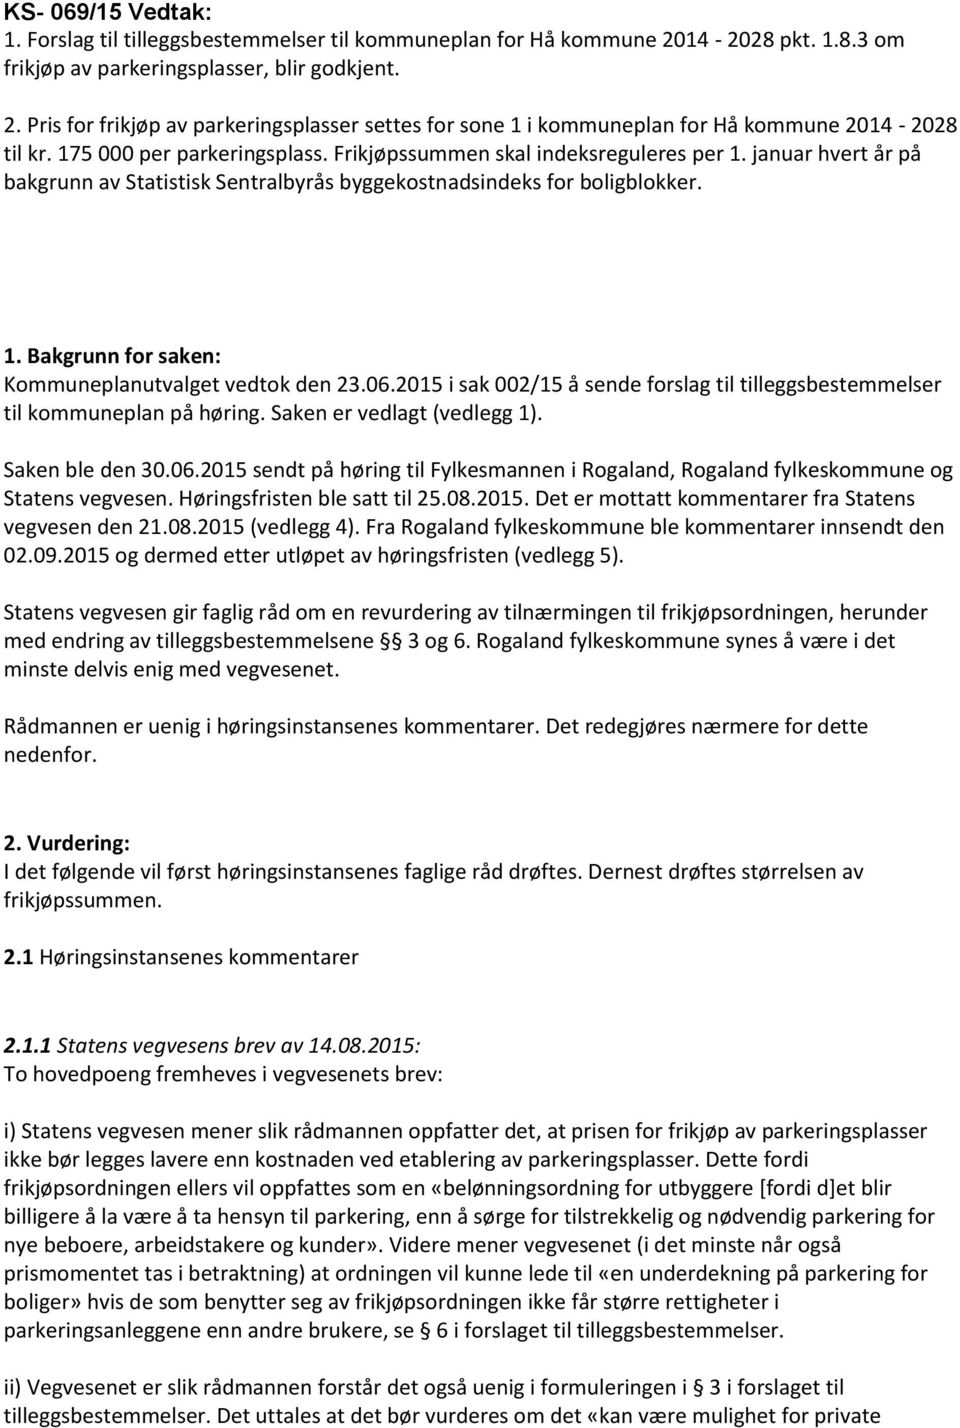 08.2015 (vedlegg 4). Fra Rogaland fylkeskommune ble kommentarer innsendt den 02.09.2015 og dermed etter utløpet av høringsfristen (vedlegg 5).